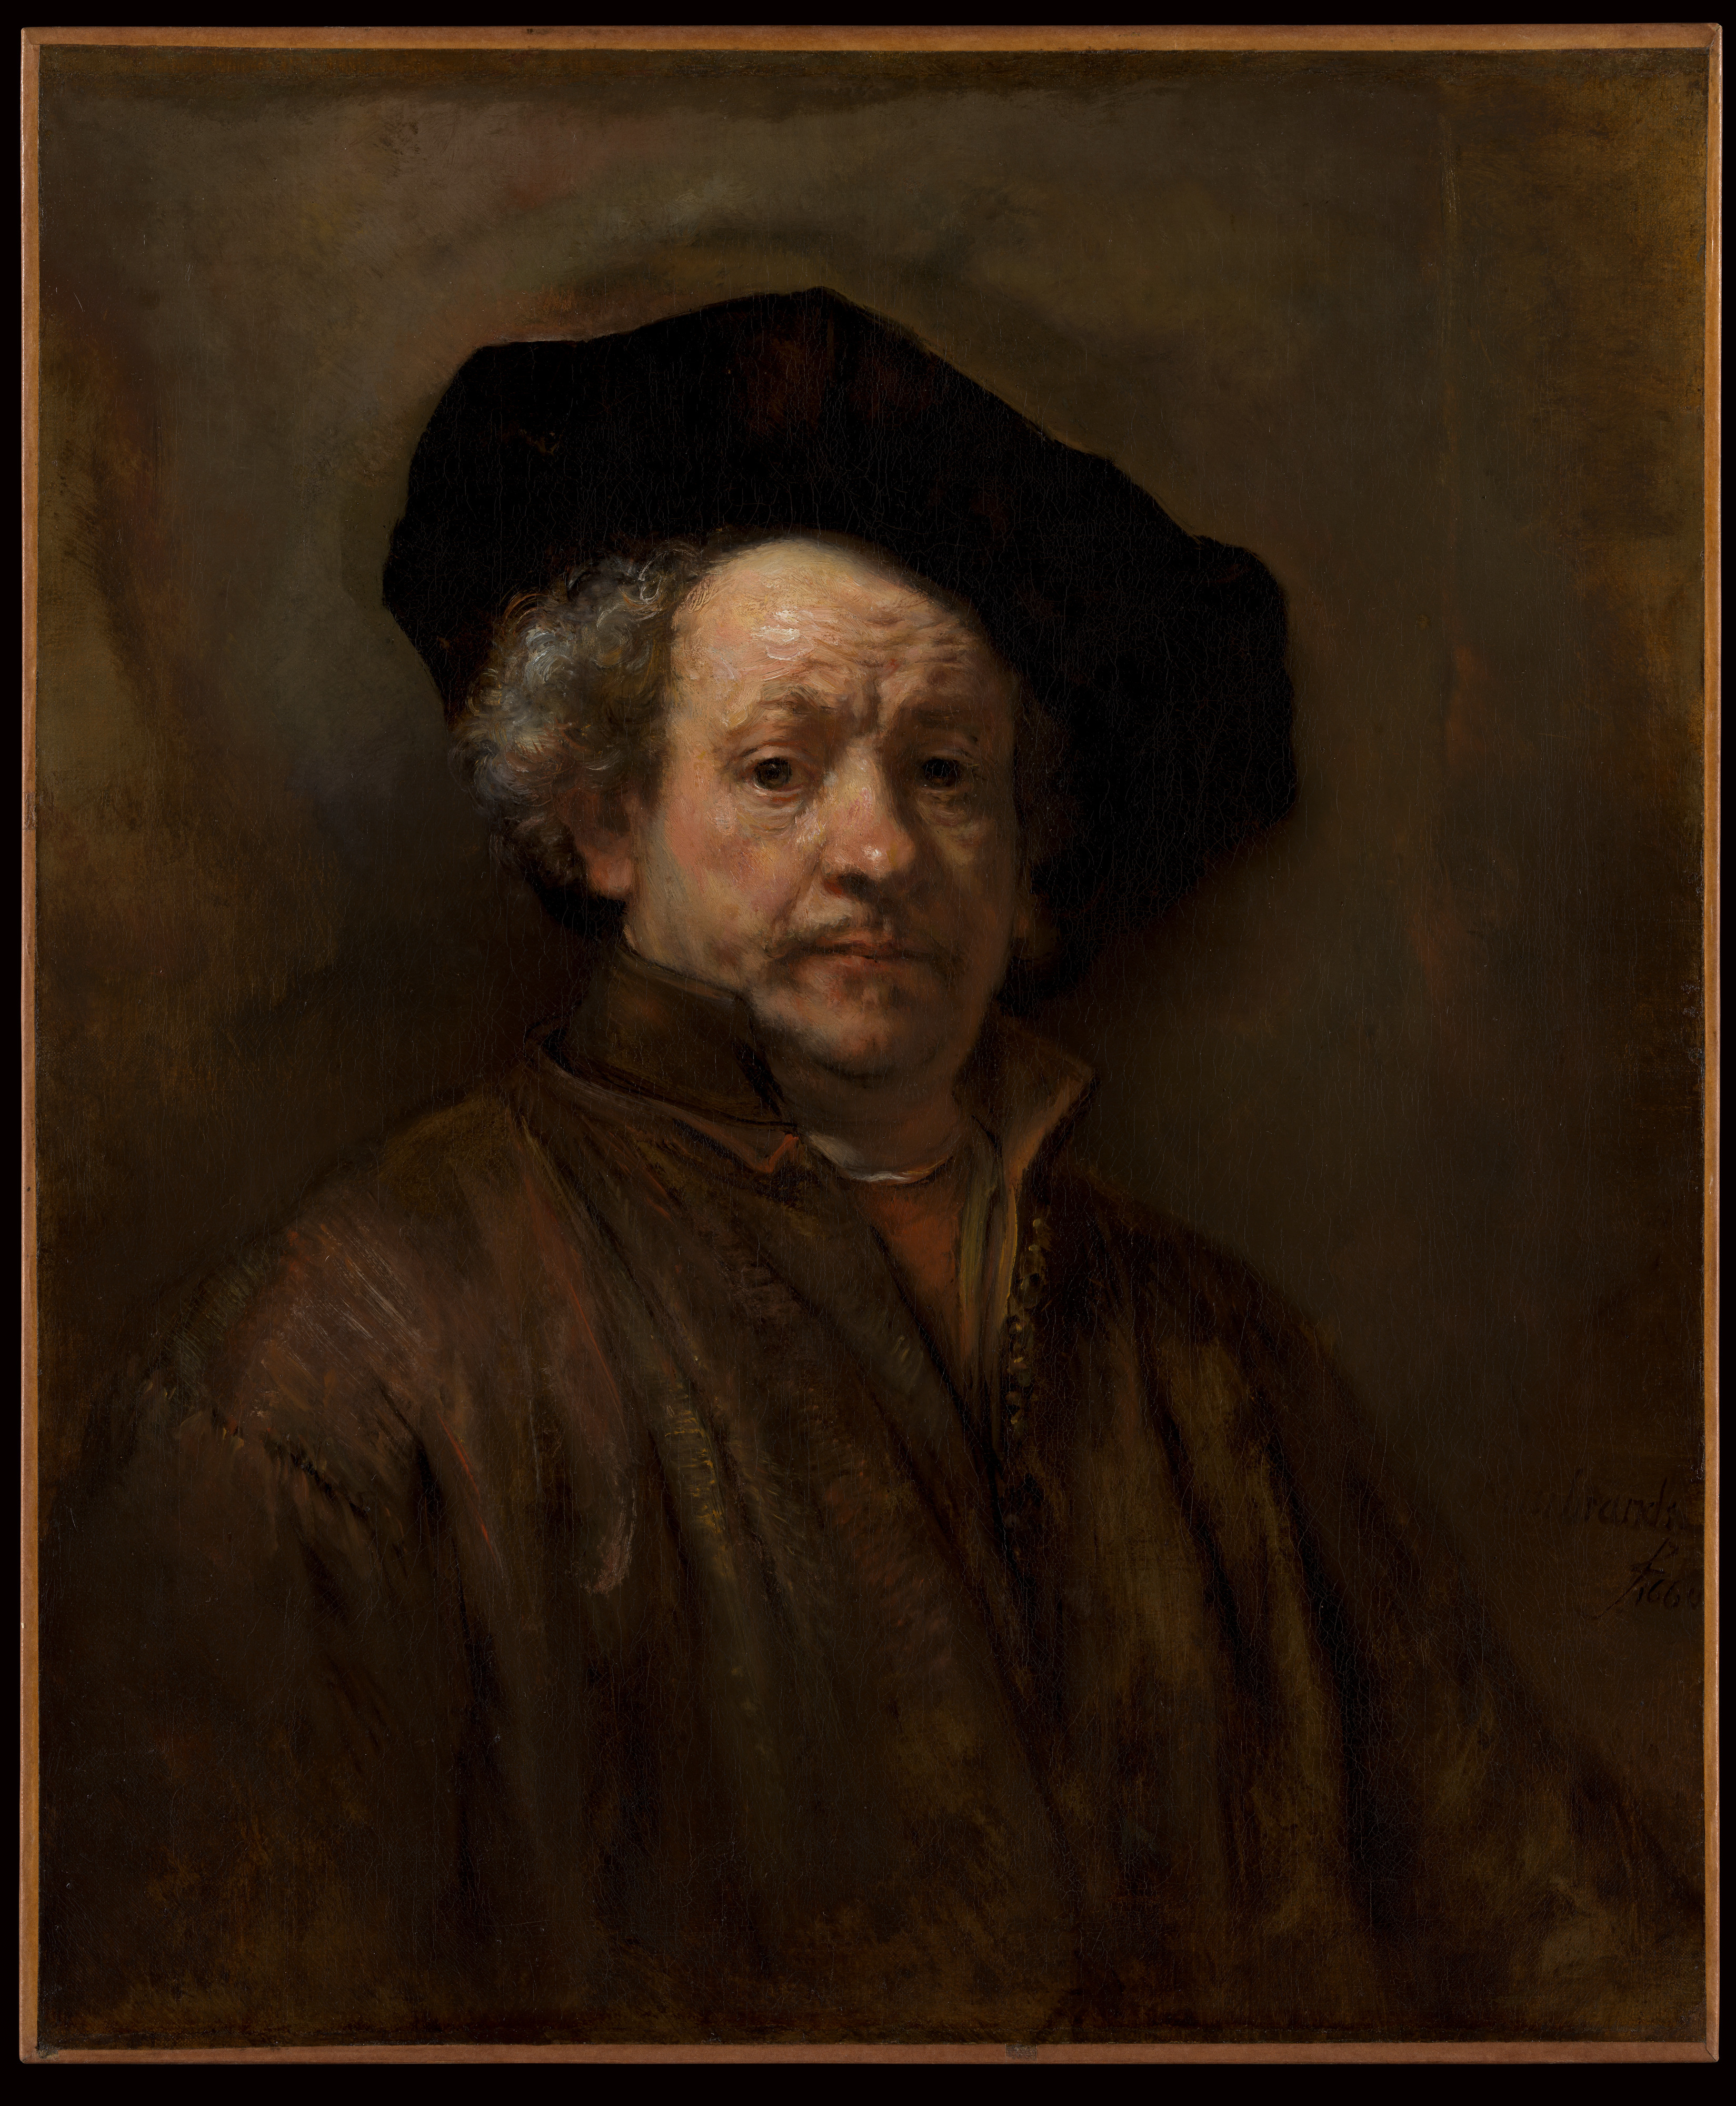 Zelfportret by Rembrandt Van Rijn - 1660 - 31 5/8 x 26 1/2 inches 